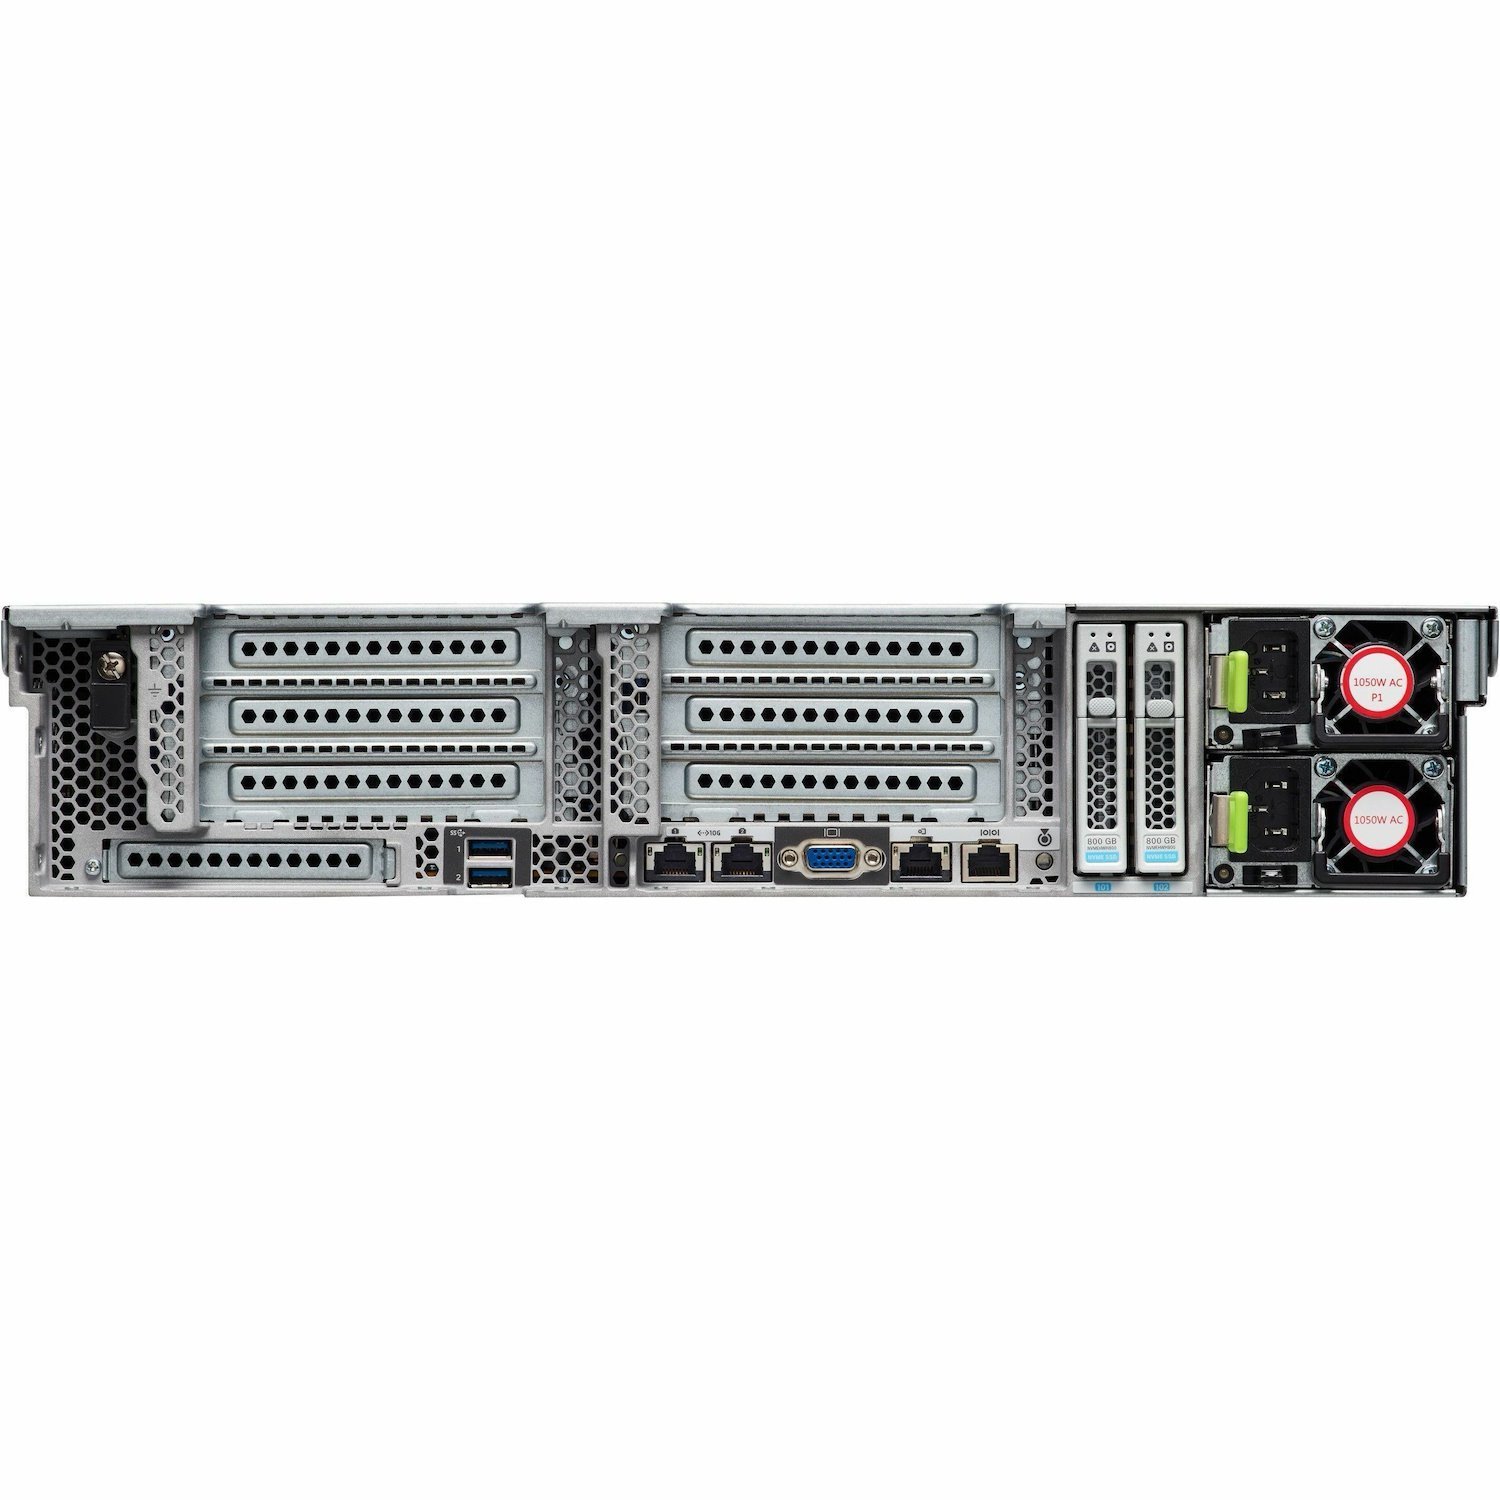 Cisco HyperFlex HXAF240c M5 2U Rack Server - 2 x Intel Xeon Silver 4114 2.20 GHz - 384 GB RAM - 240 GB SSD - 12Gb/s SAS Controller